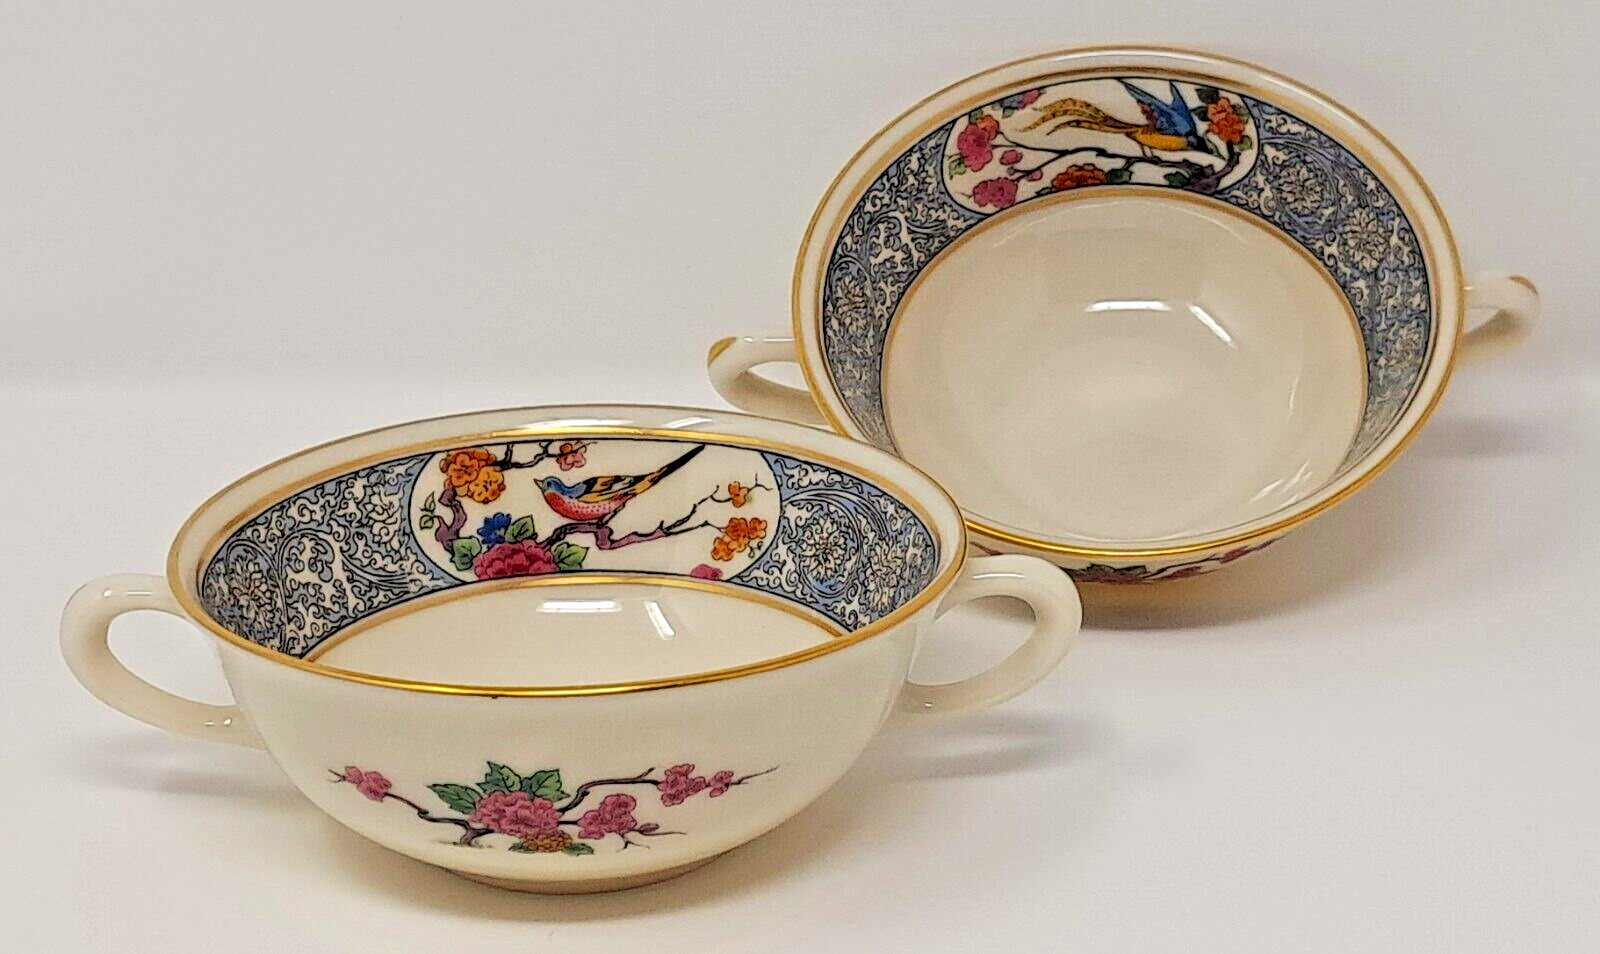 Lenox Ming Cream Soup Bowl Set of 2 porcelain ceramic birds & florals USA made